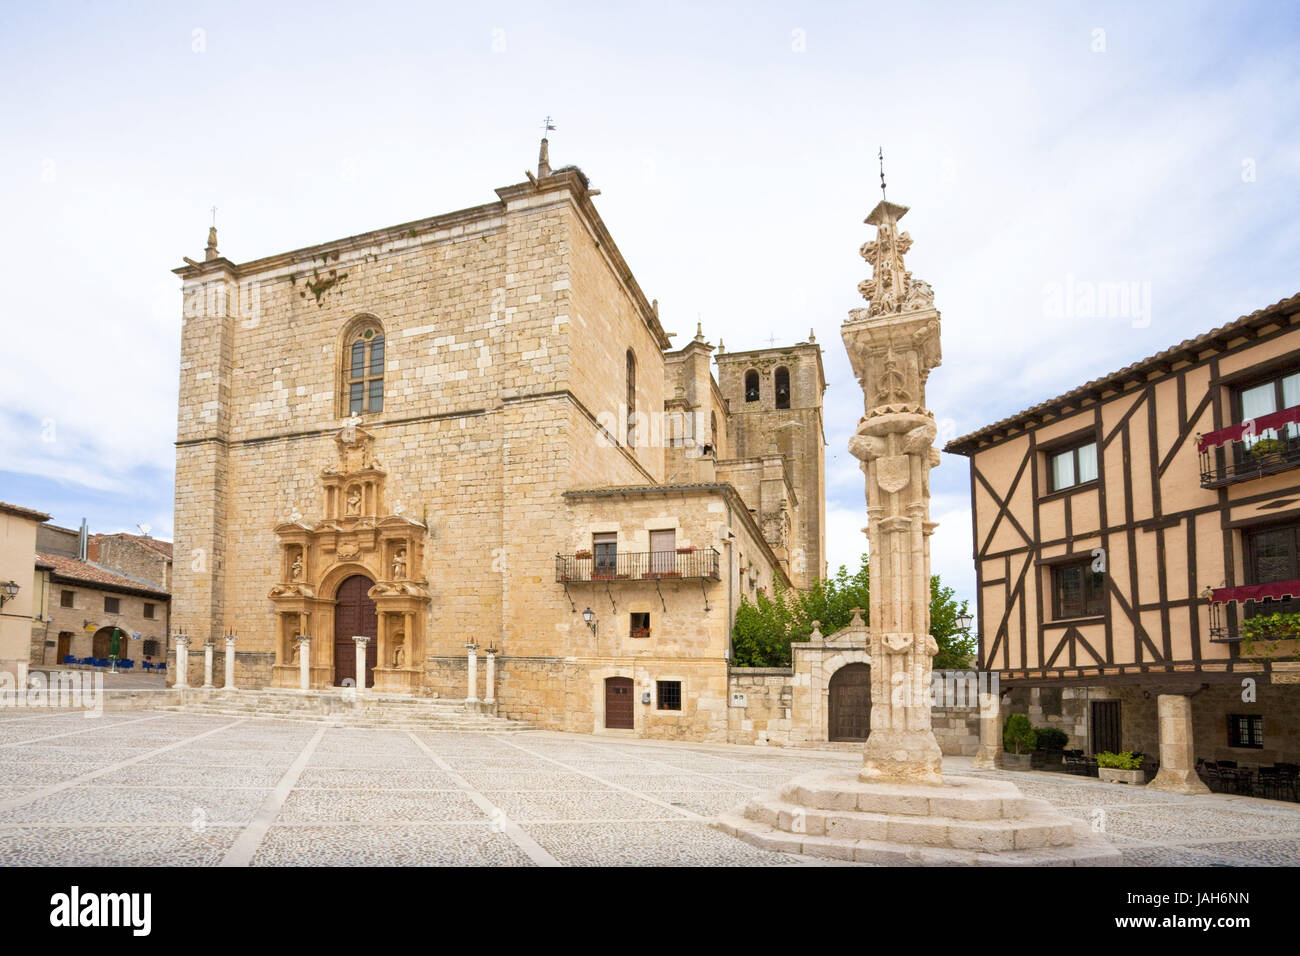 Spain,Castile and León,Penaranda de Duero,church, Stock Photo